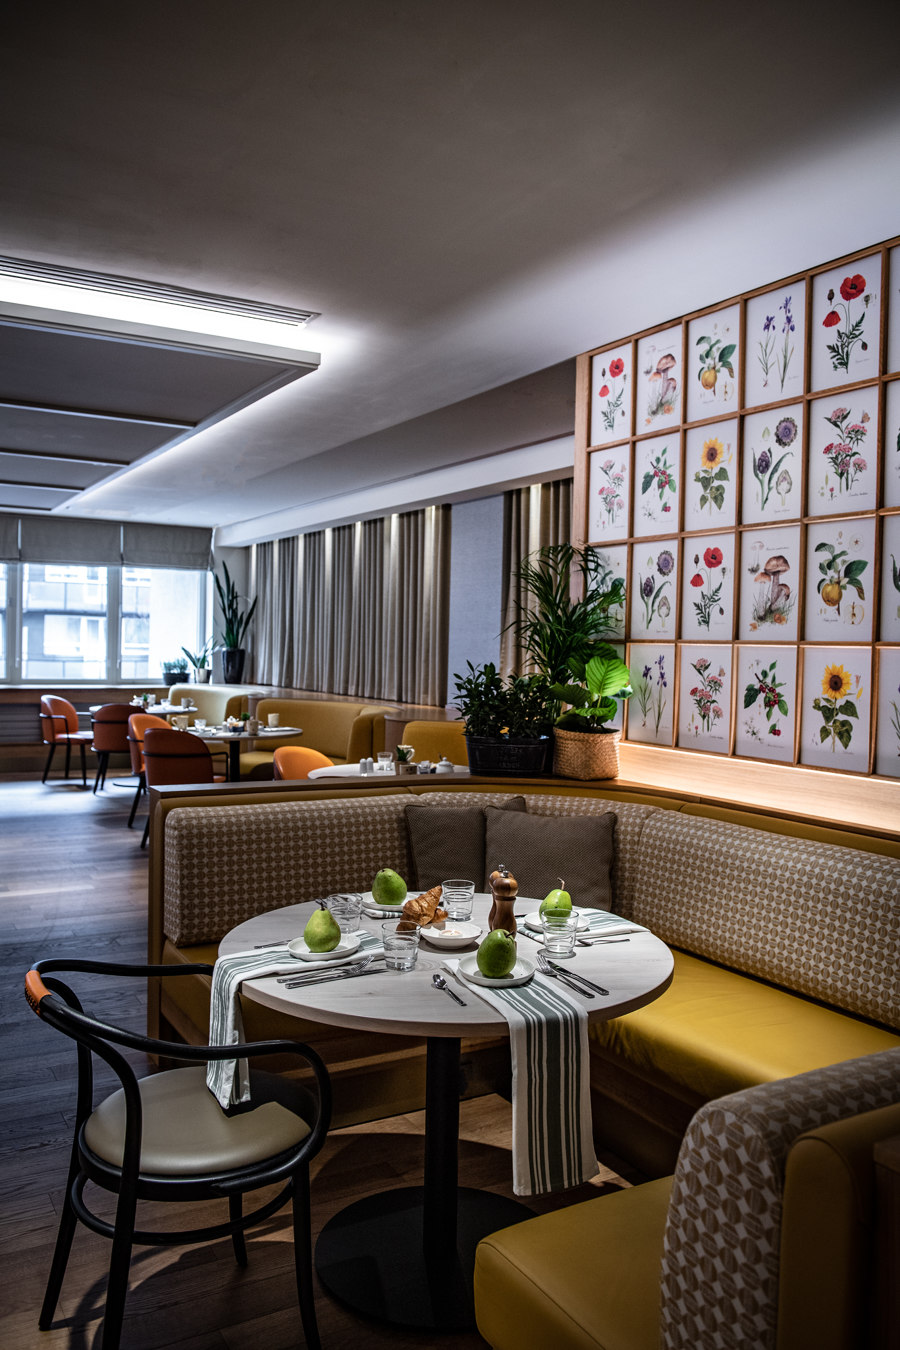 Sheraton Grand Warsaw de Epicurean | Diseño de restaurantes